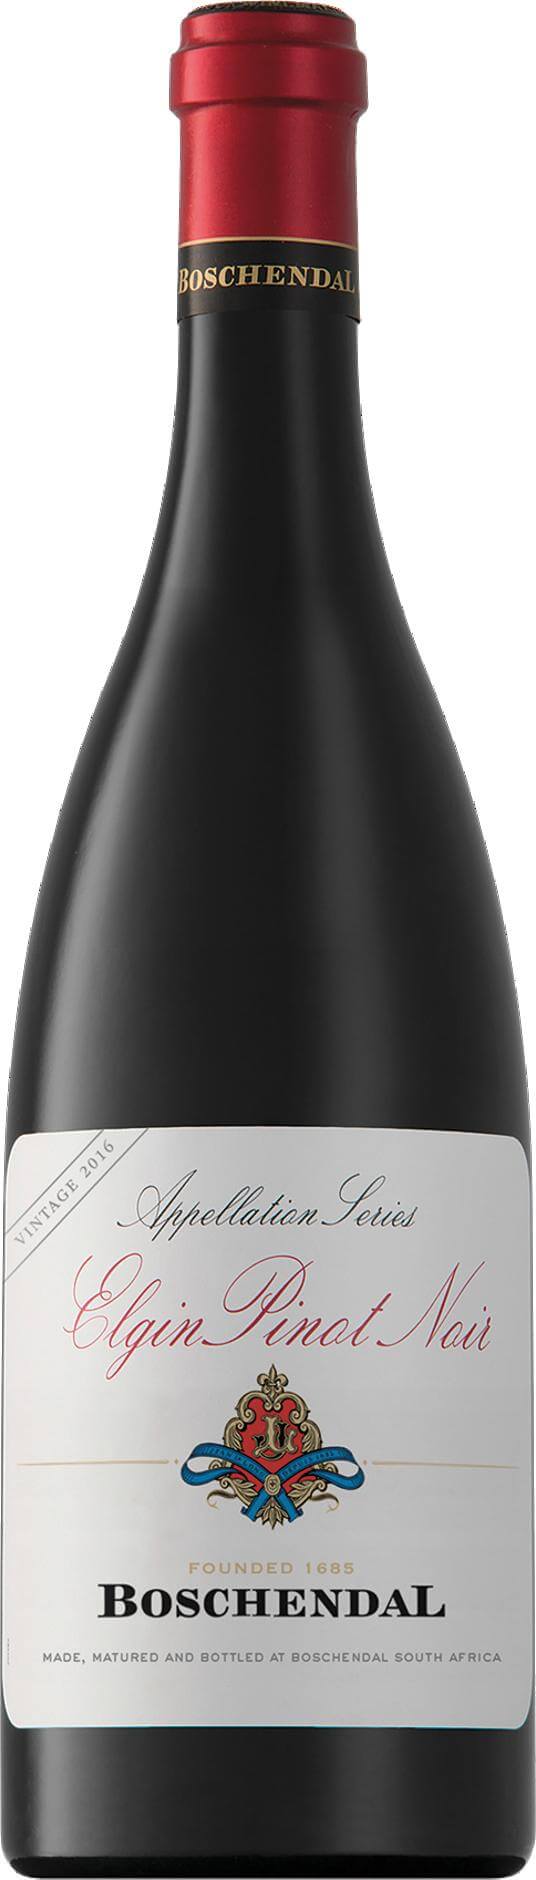 Boschendal Elgin Pinot Noir 2020